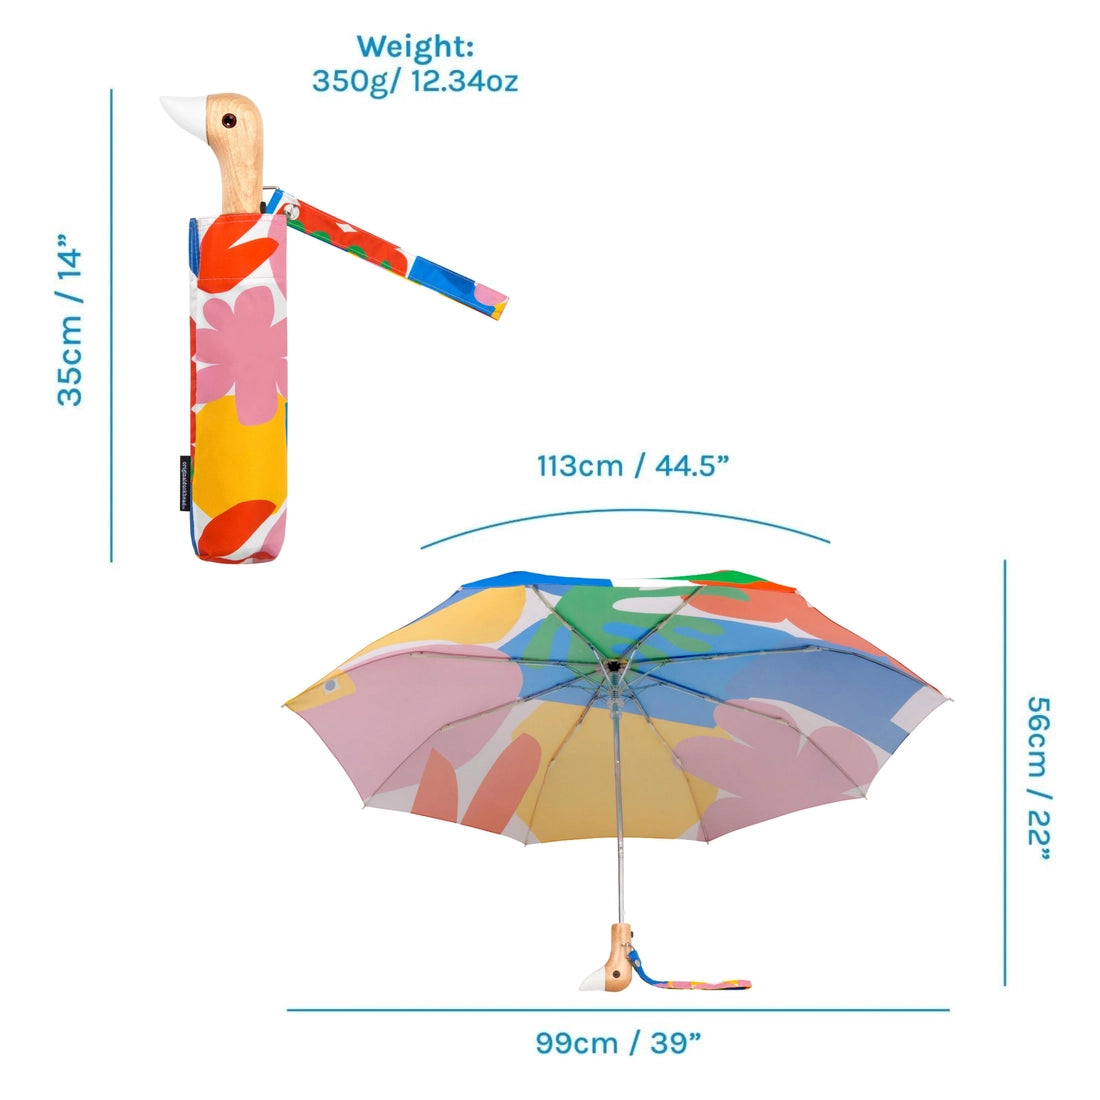 Original Duckhead Umbrella - Matisse Print